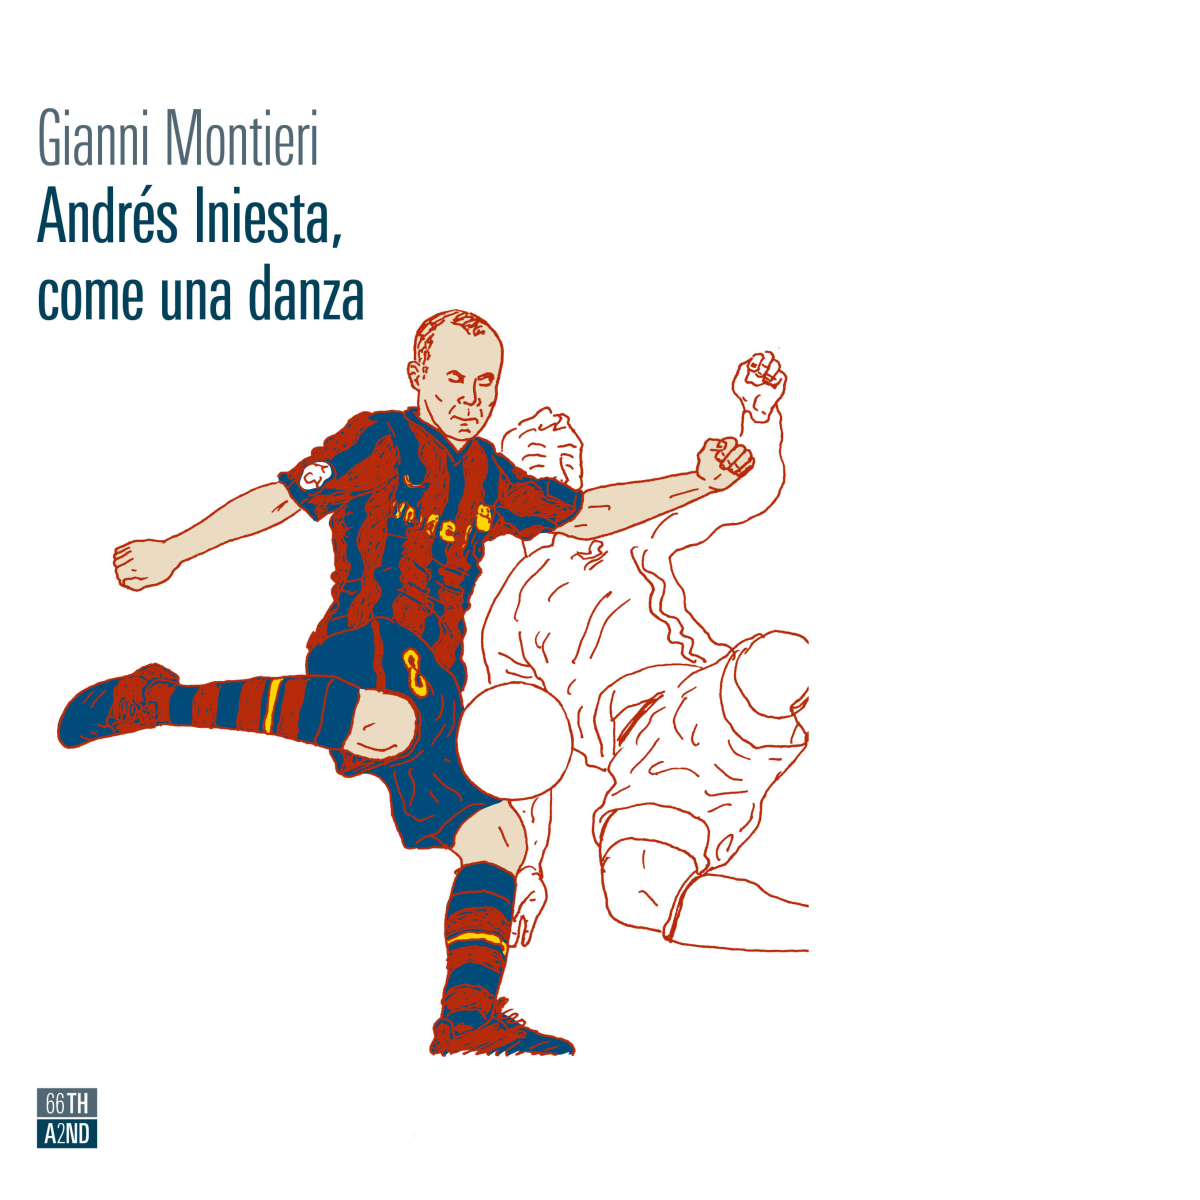 Andr?s Iniesta, come una danza di Gianni Montieri,  2021,  66th And 2nd